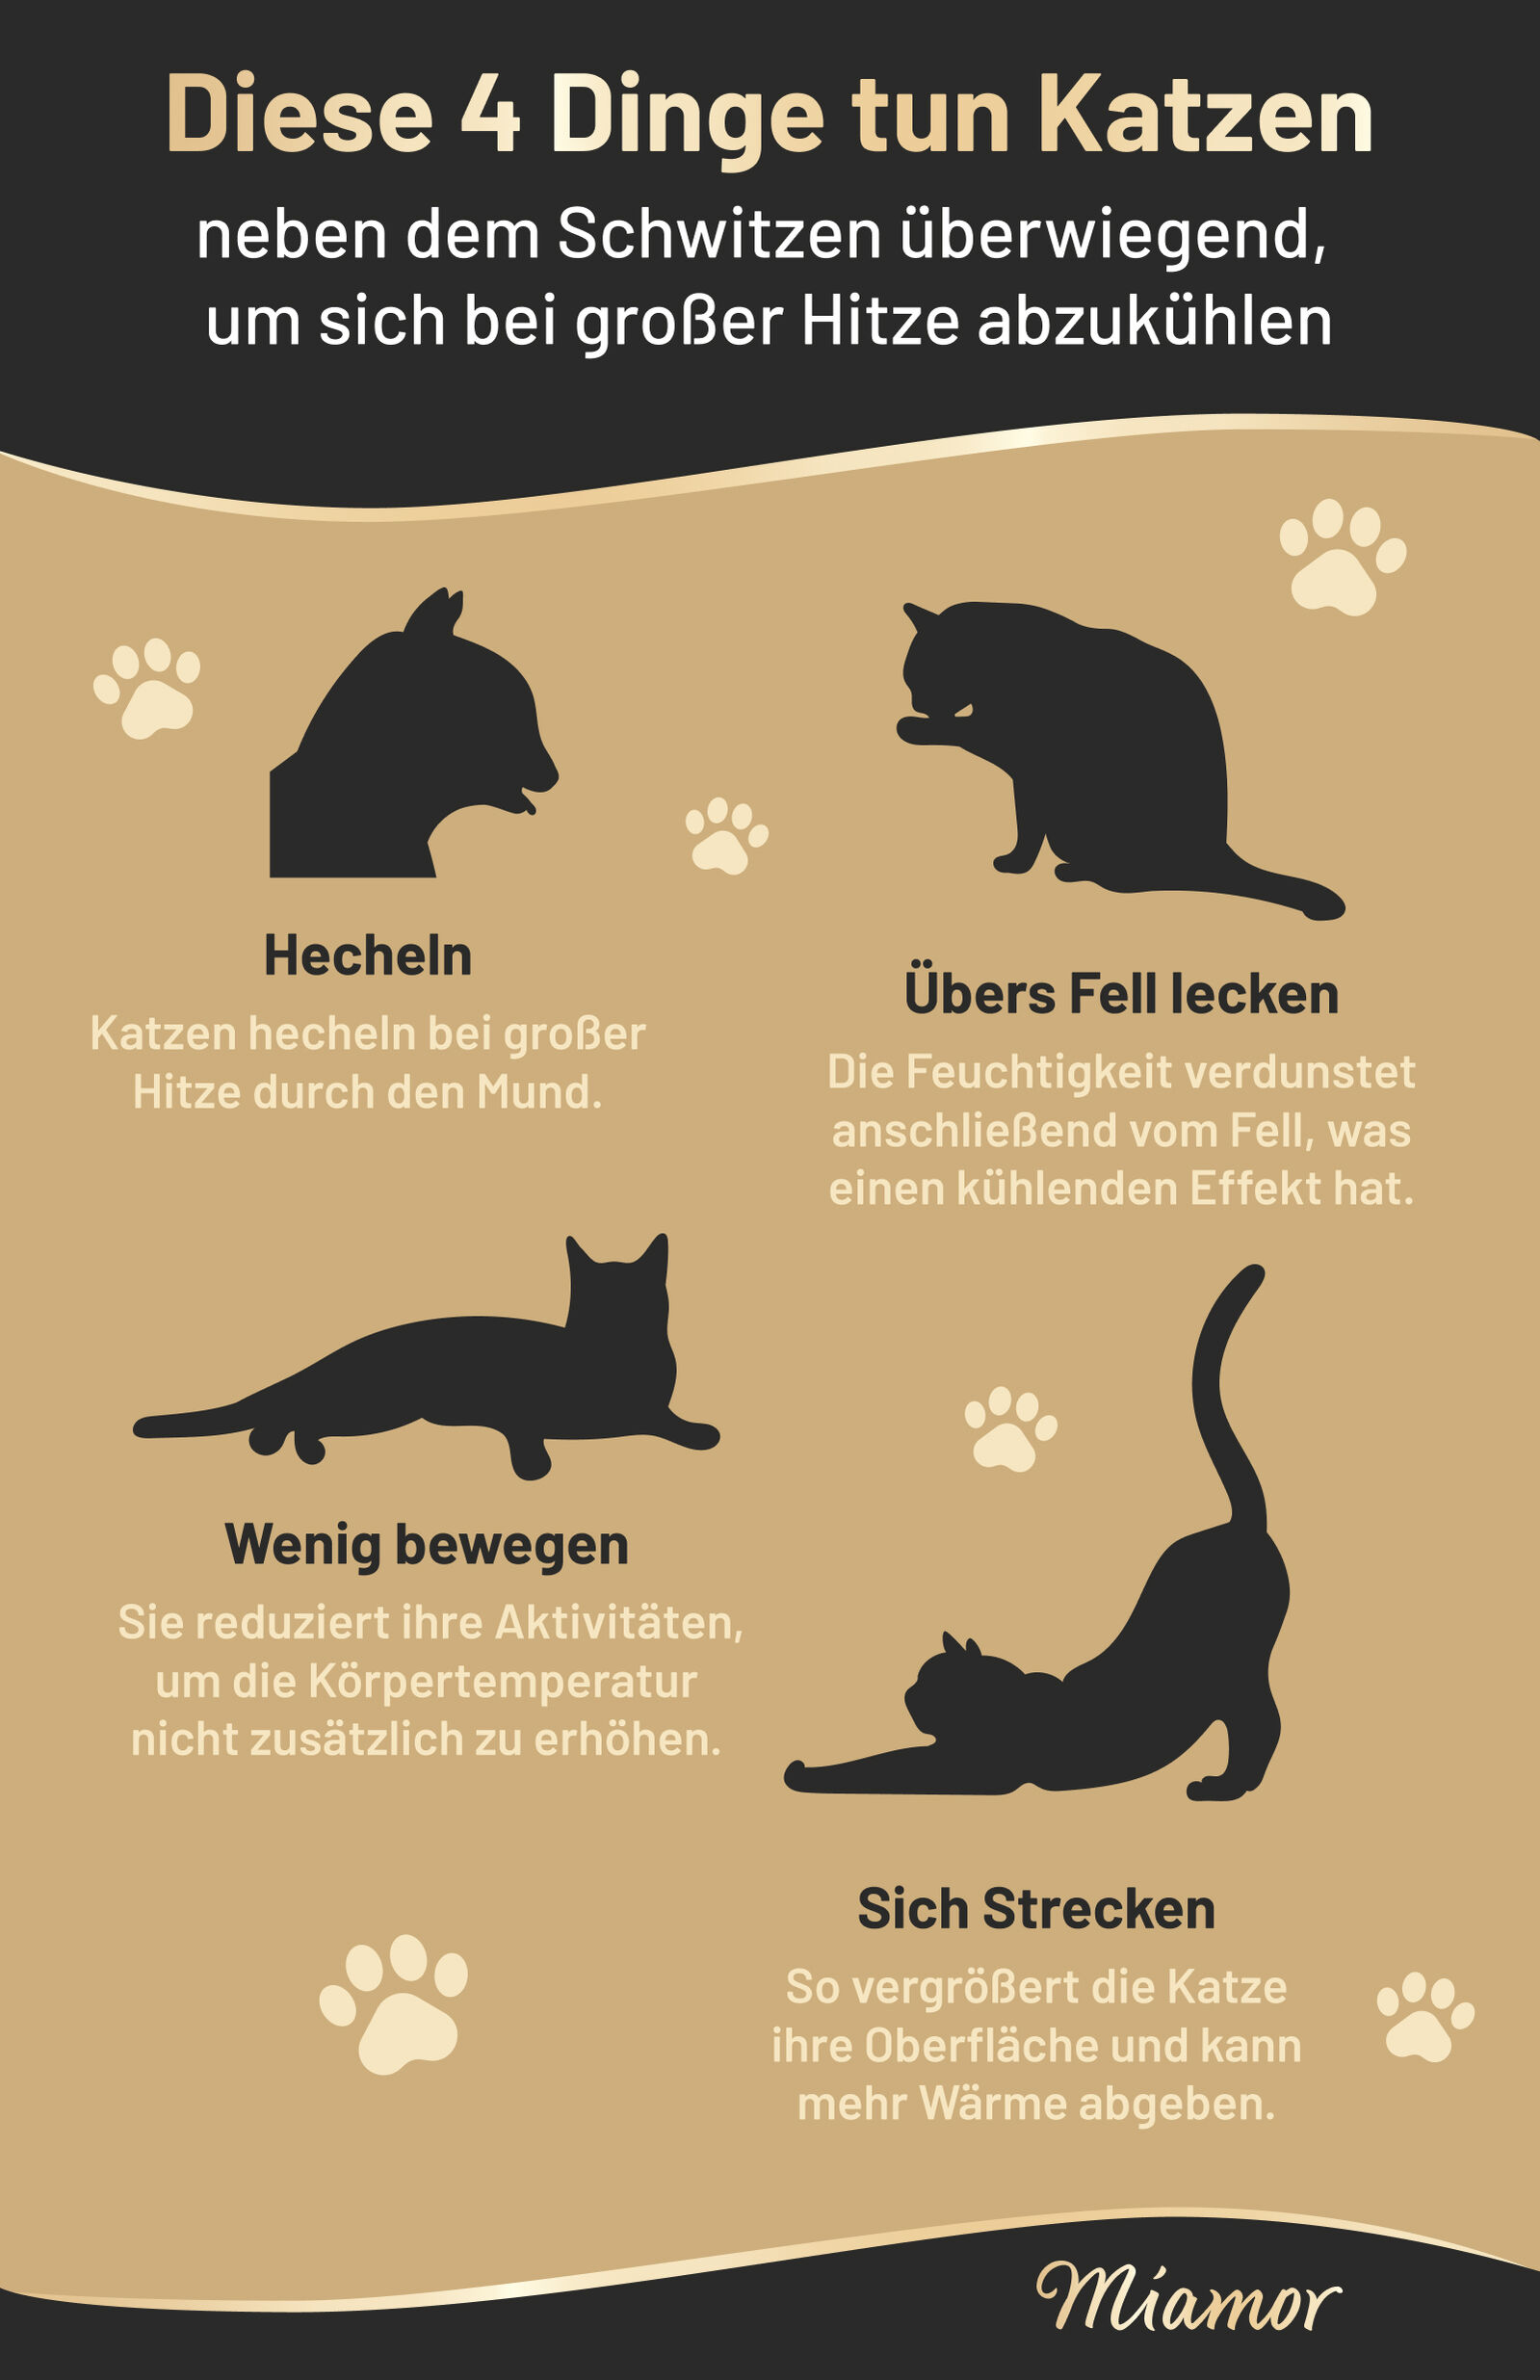 Können Katzen schwitzen?